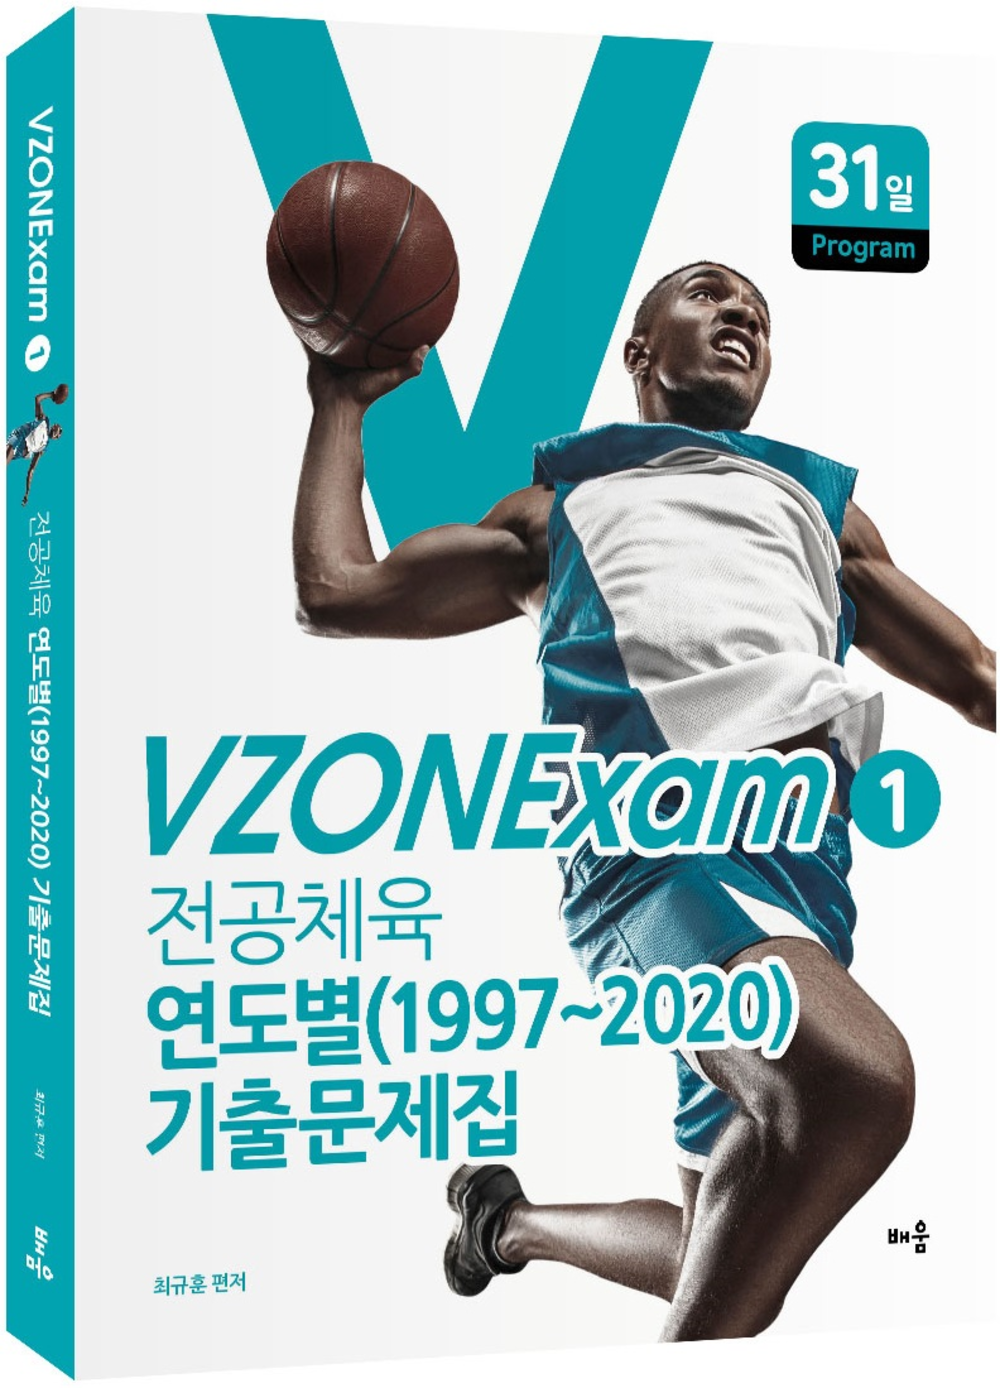 VZONExam1(연습용)